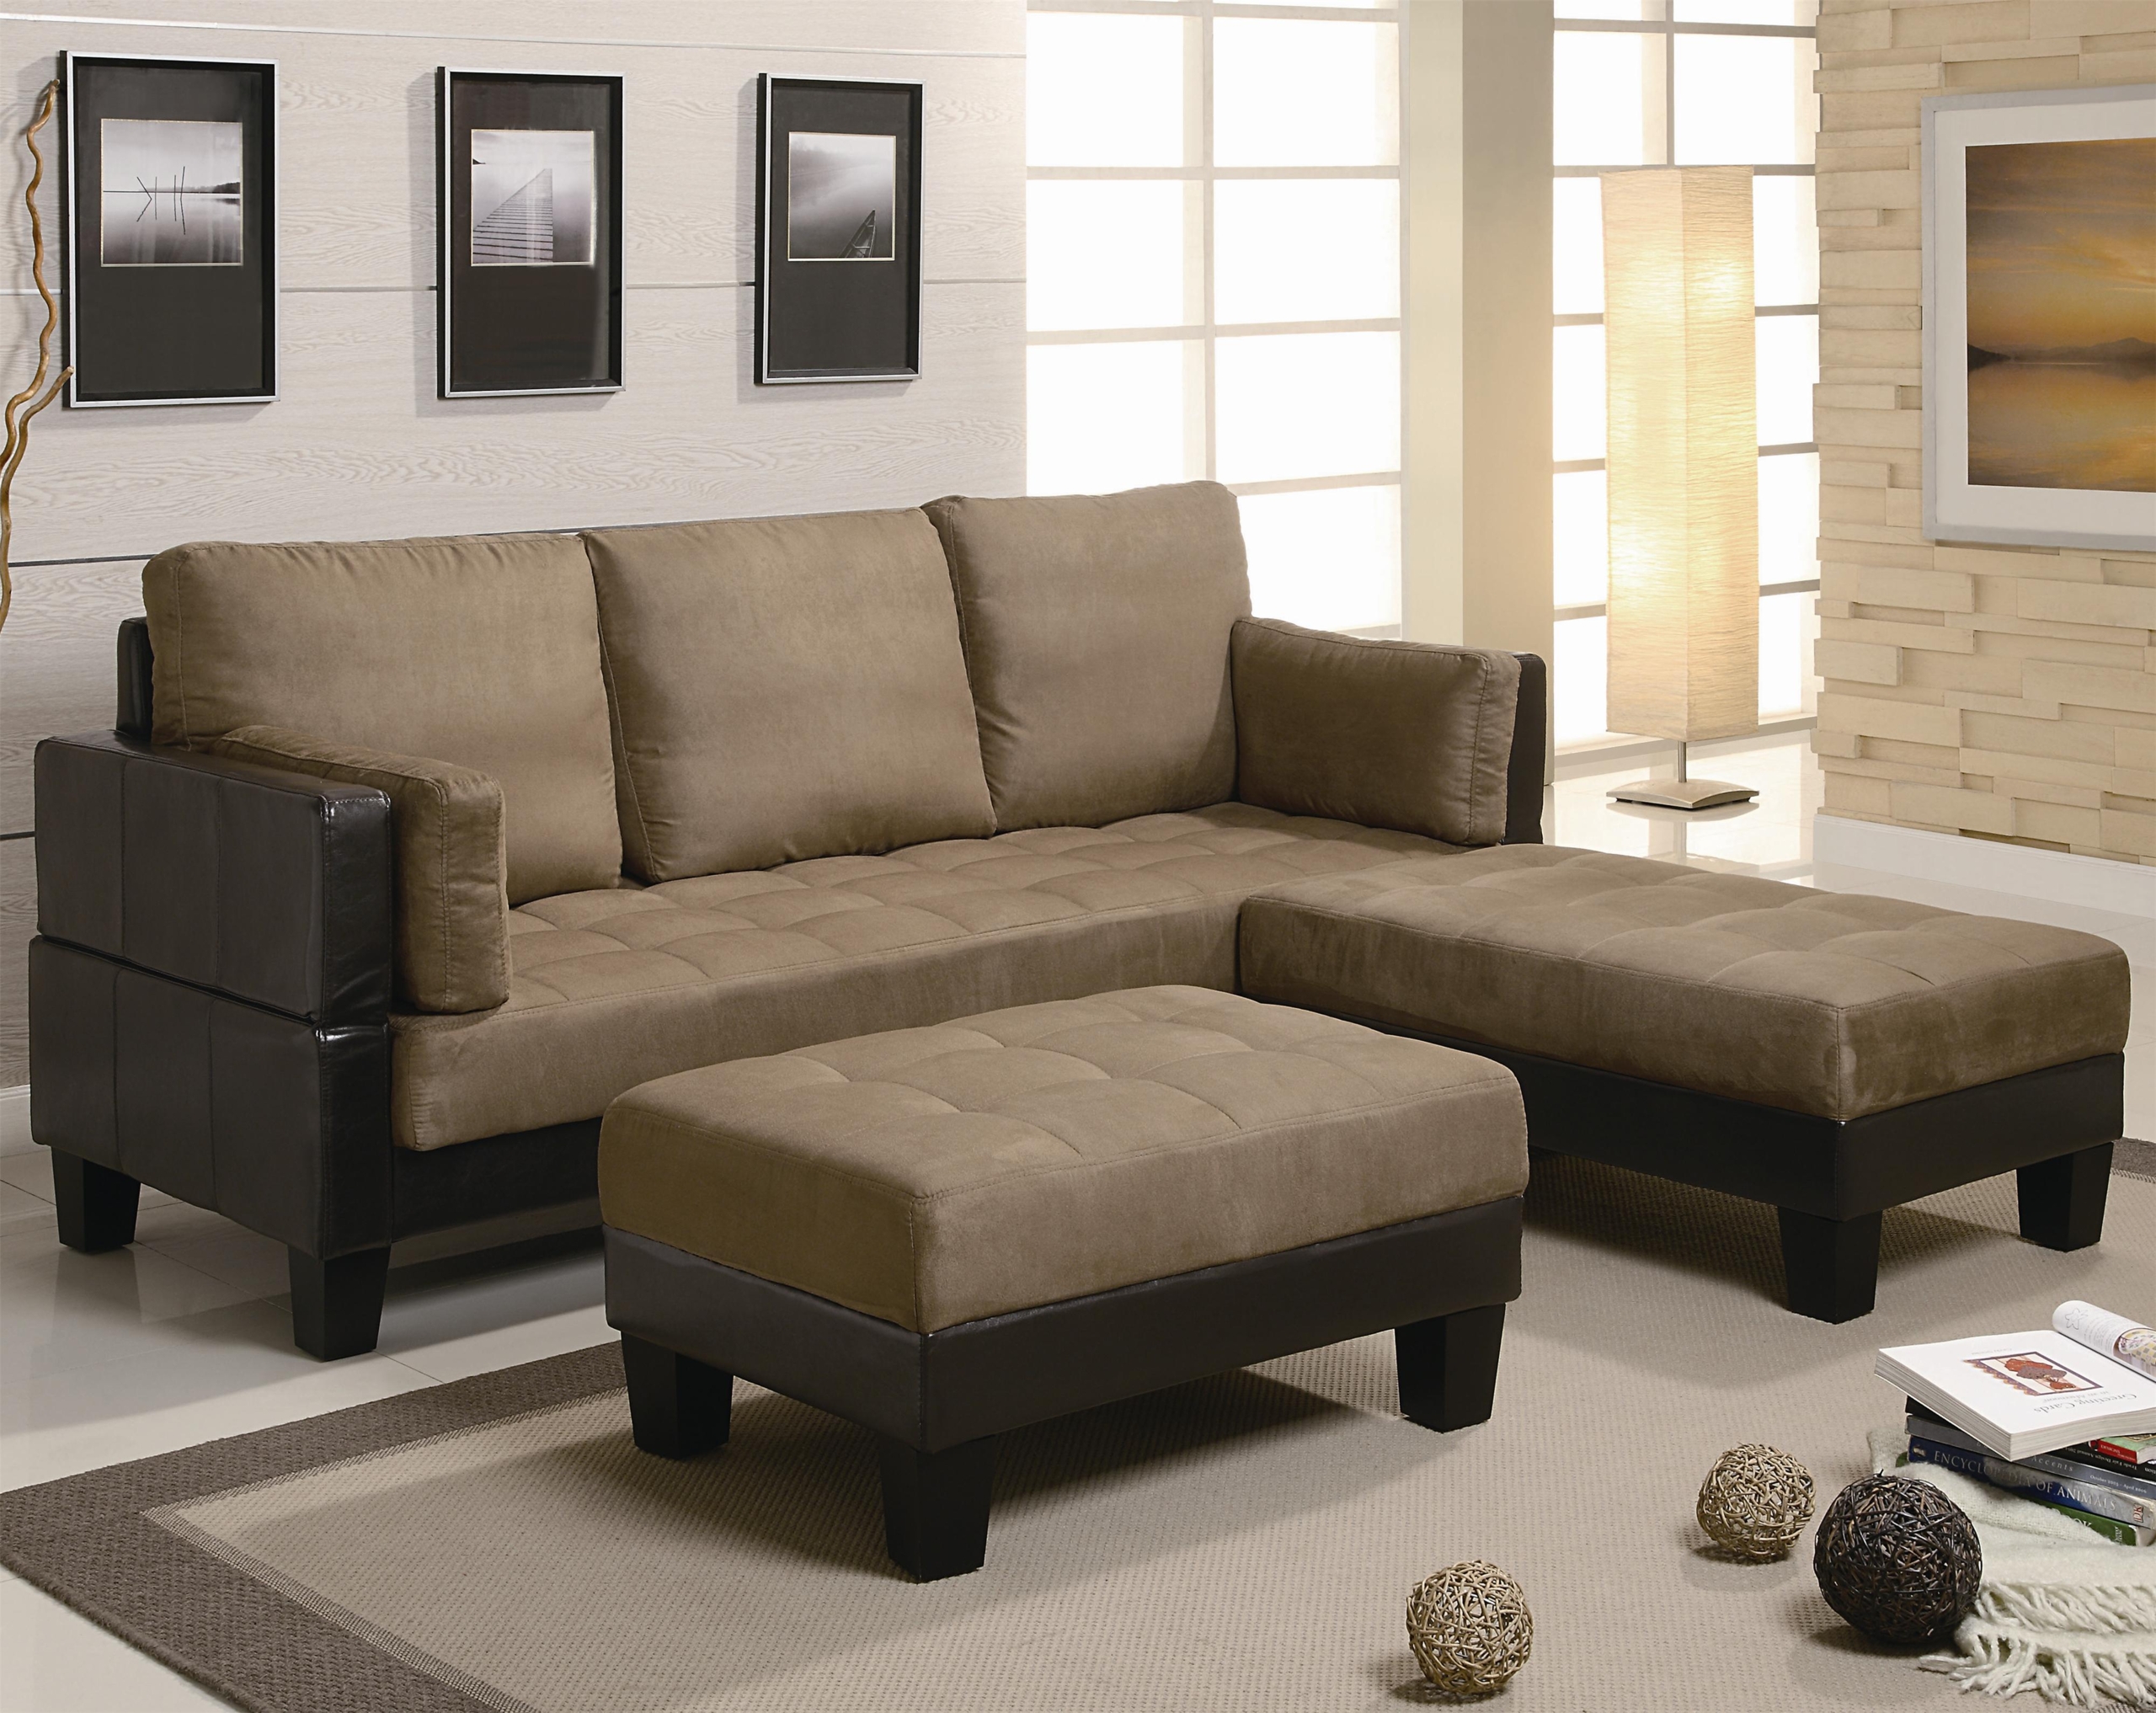 Ergonomic living room furniture 9